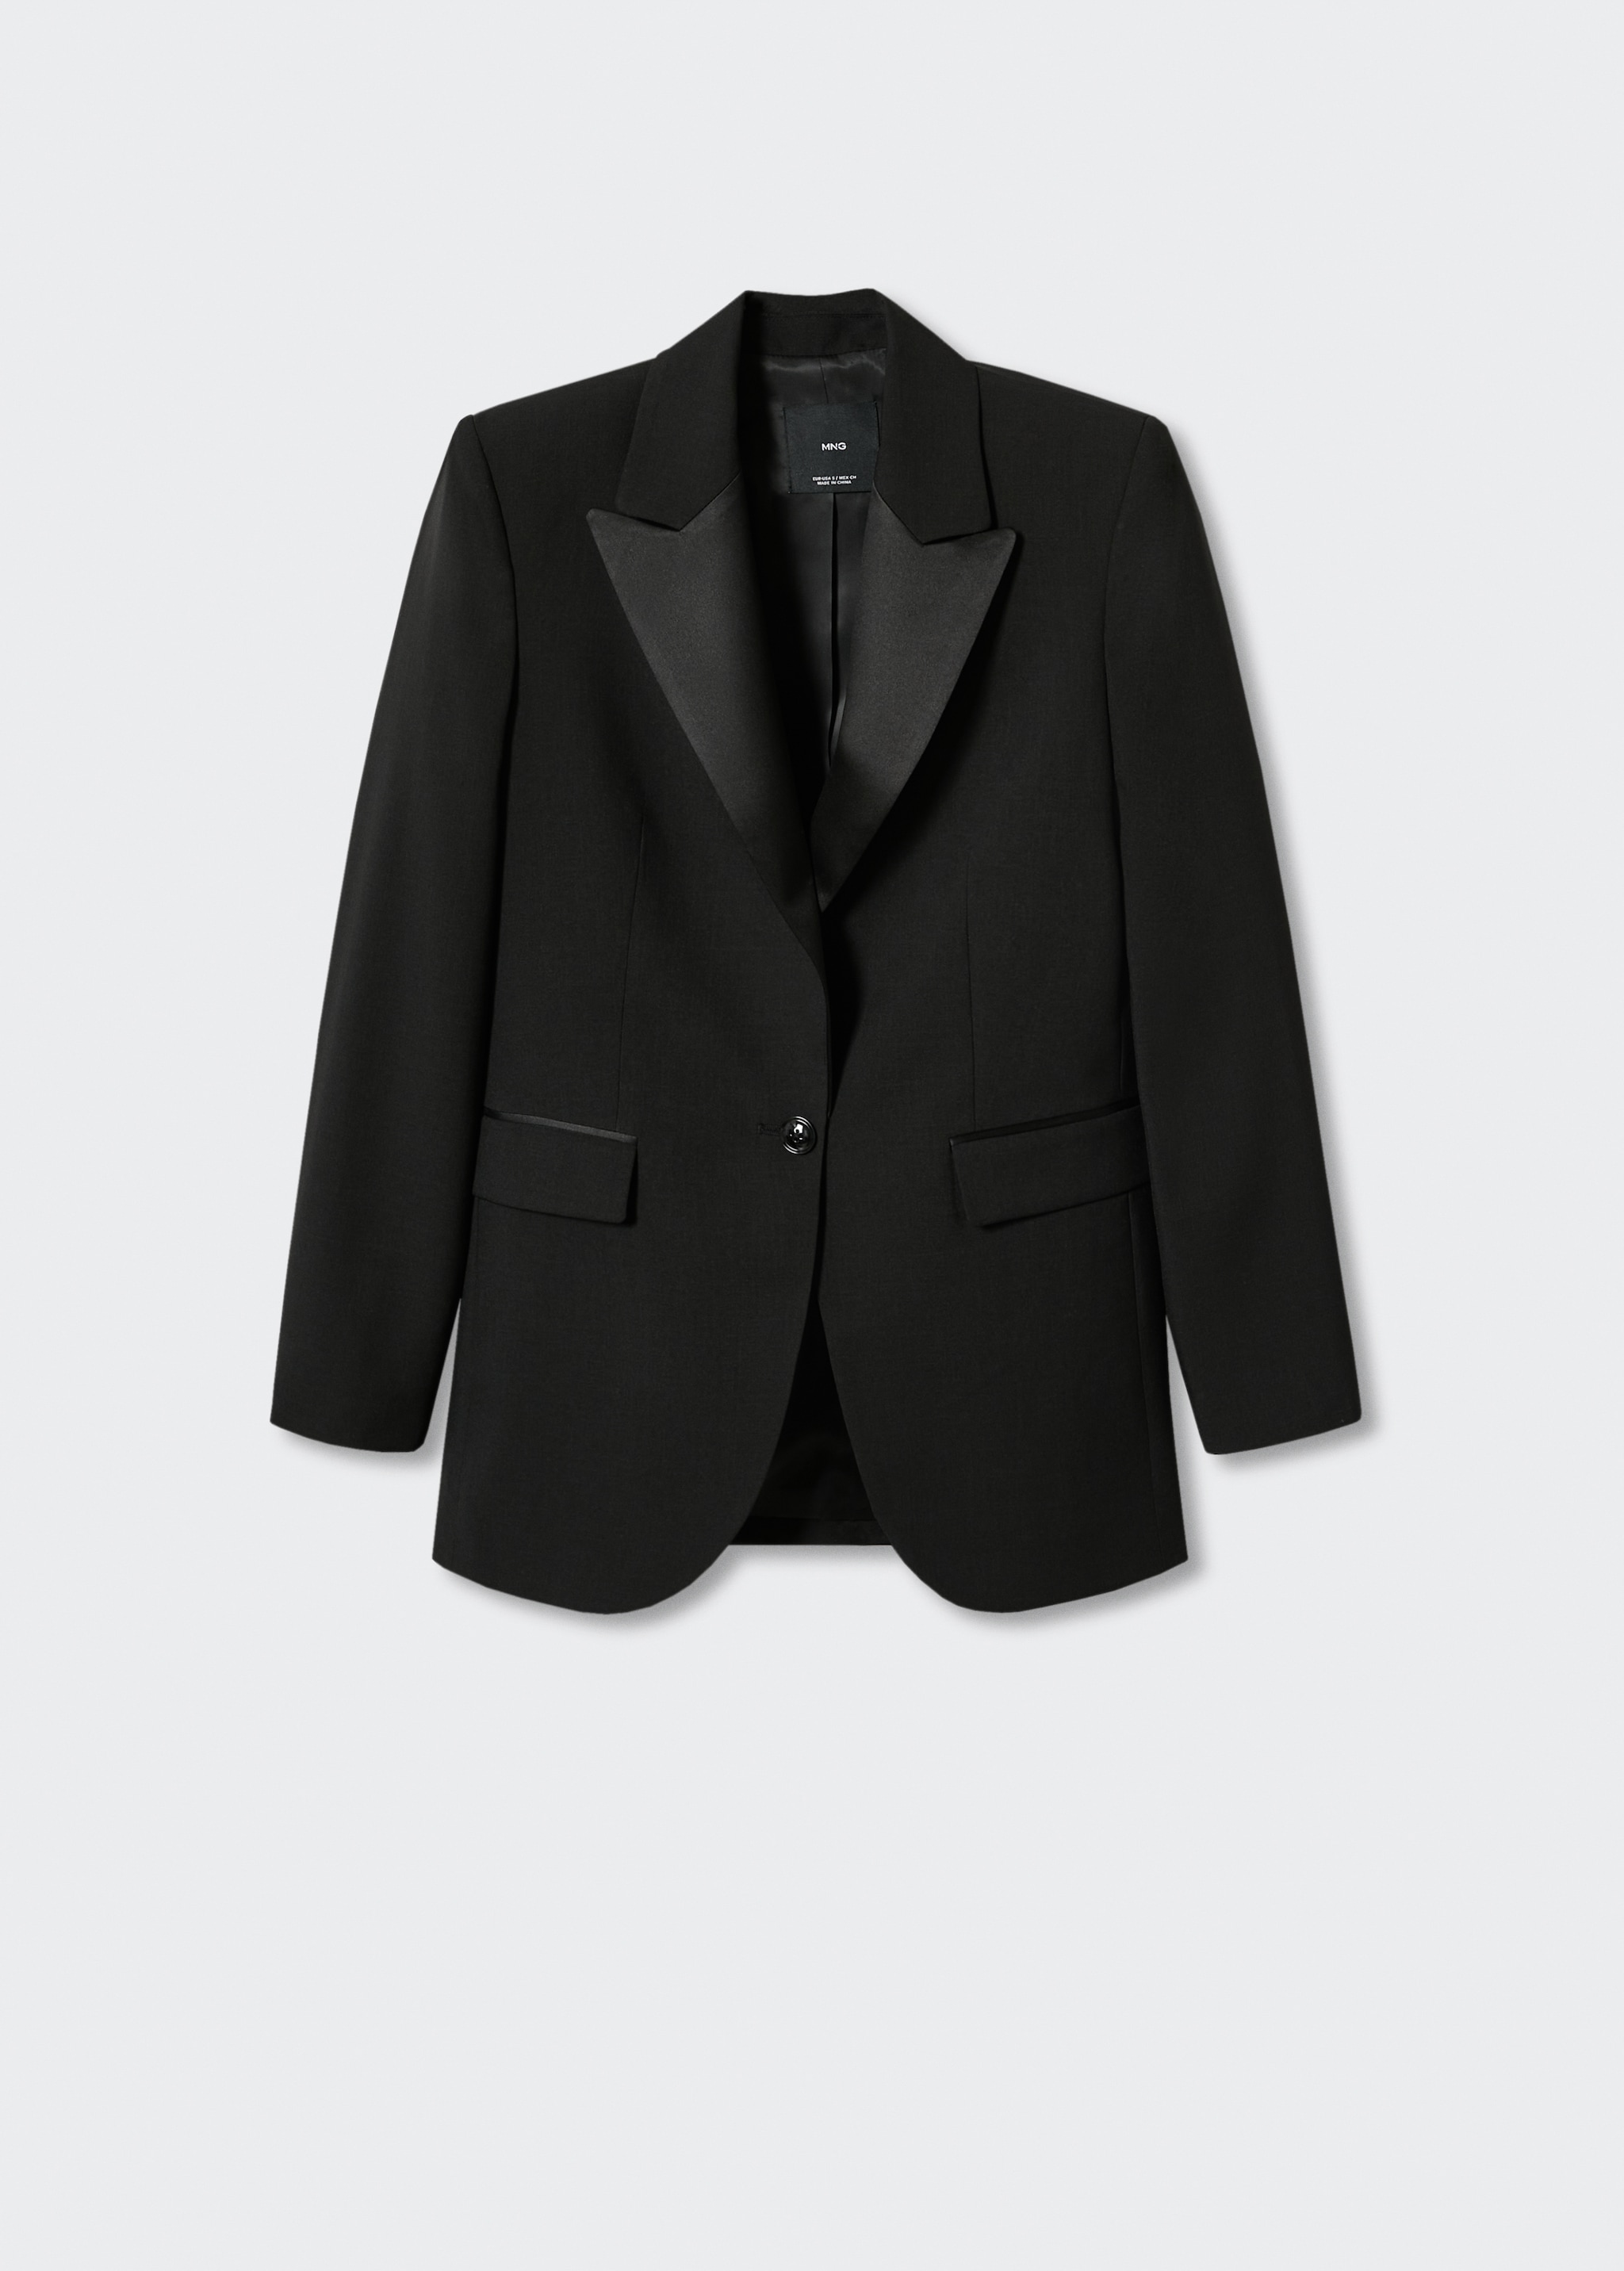 Satin lapels suit blazer - Article without model